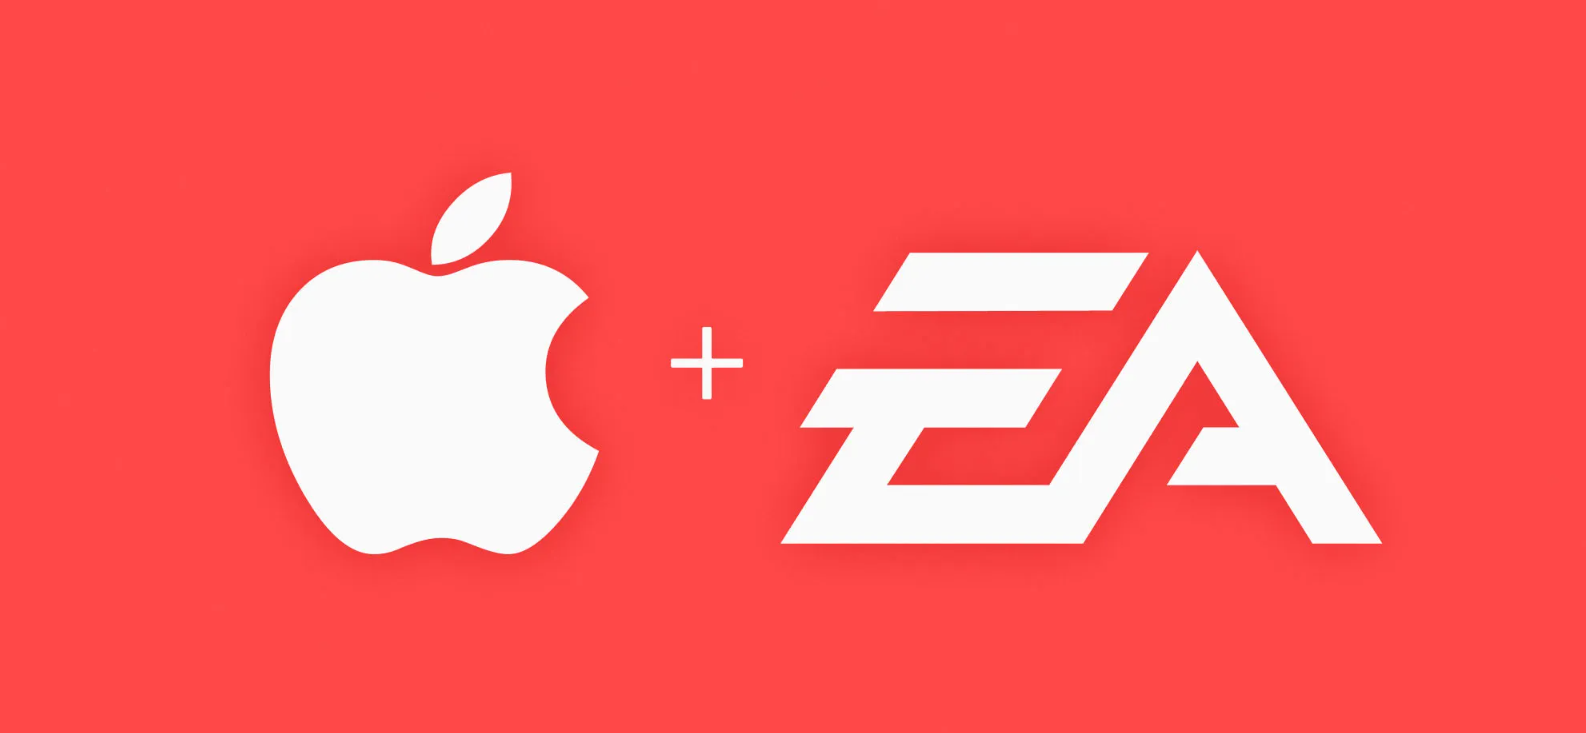 Az Apple mindenképp jól járna az EA-vel, mégsem valószínű a felvásárlás